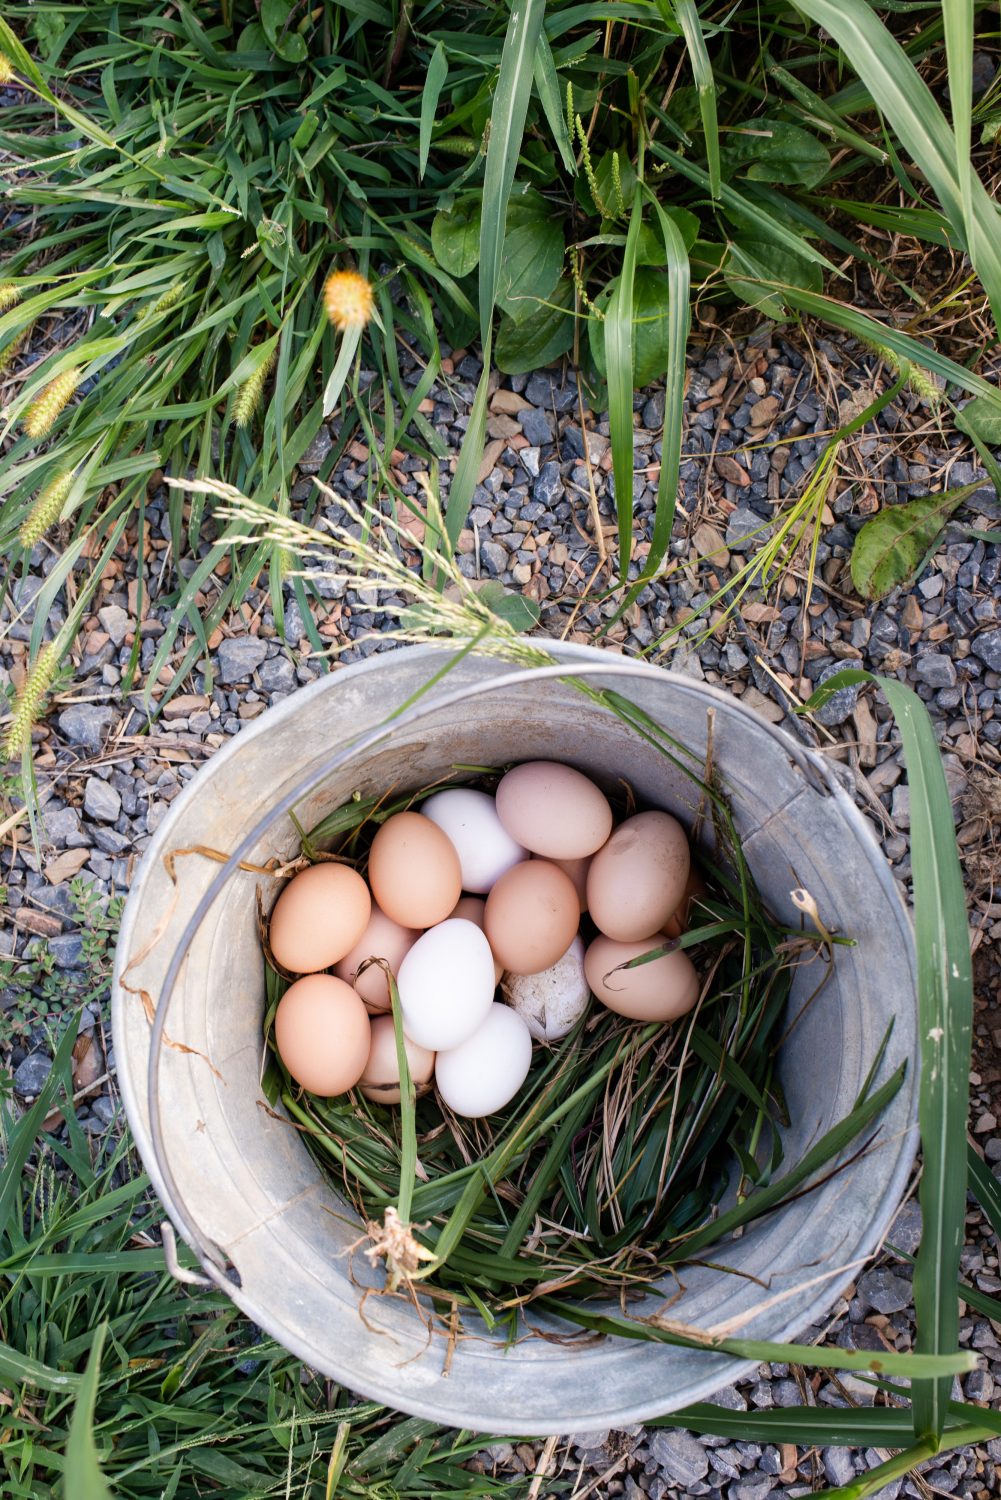 eggs-in-a-bucket